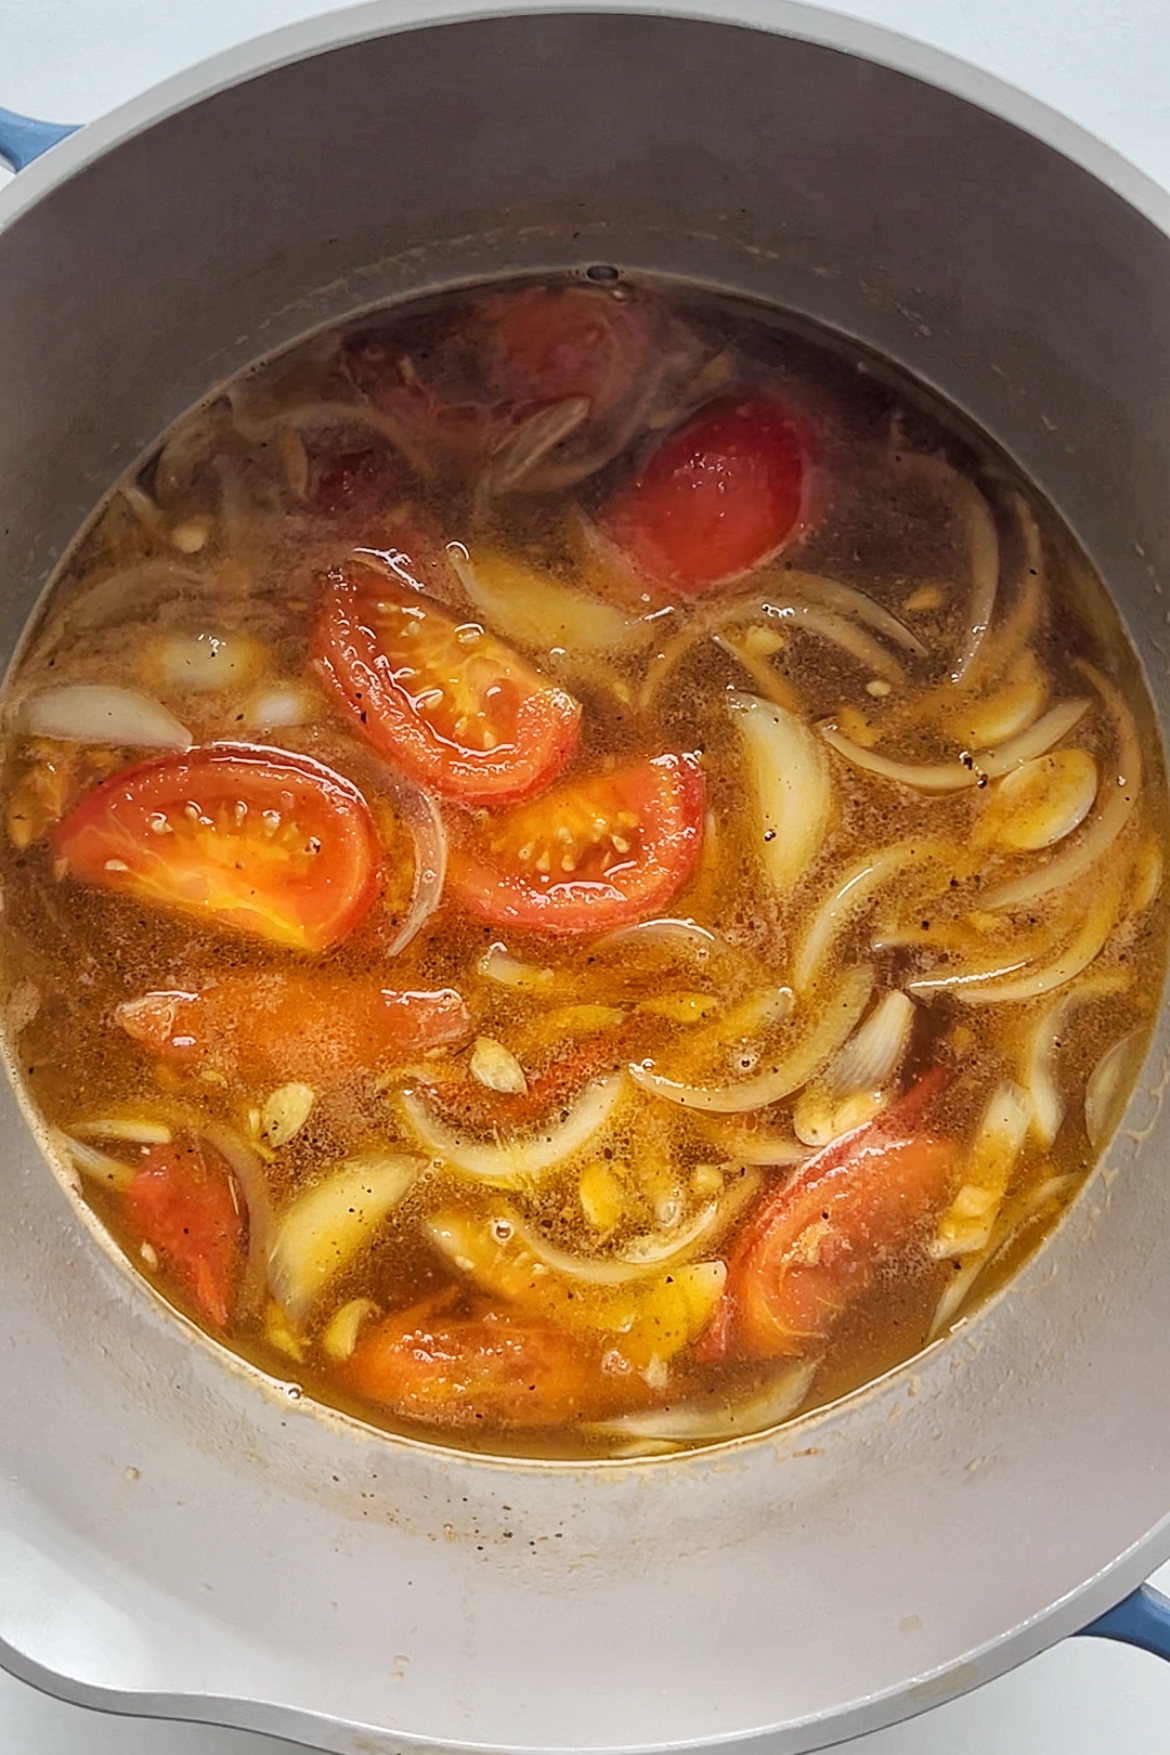 Pot of soup.